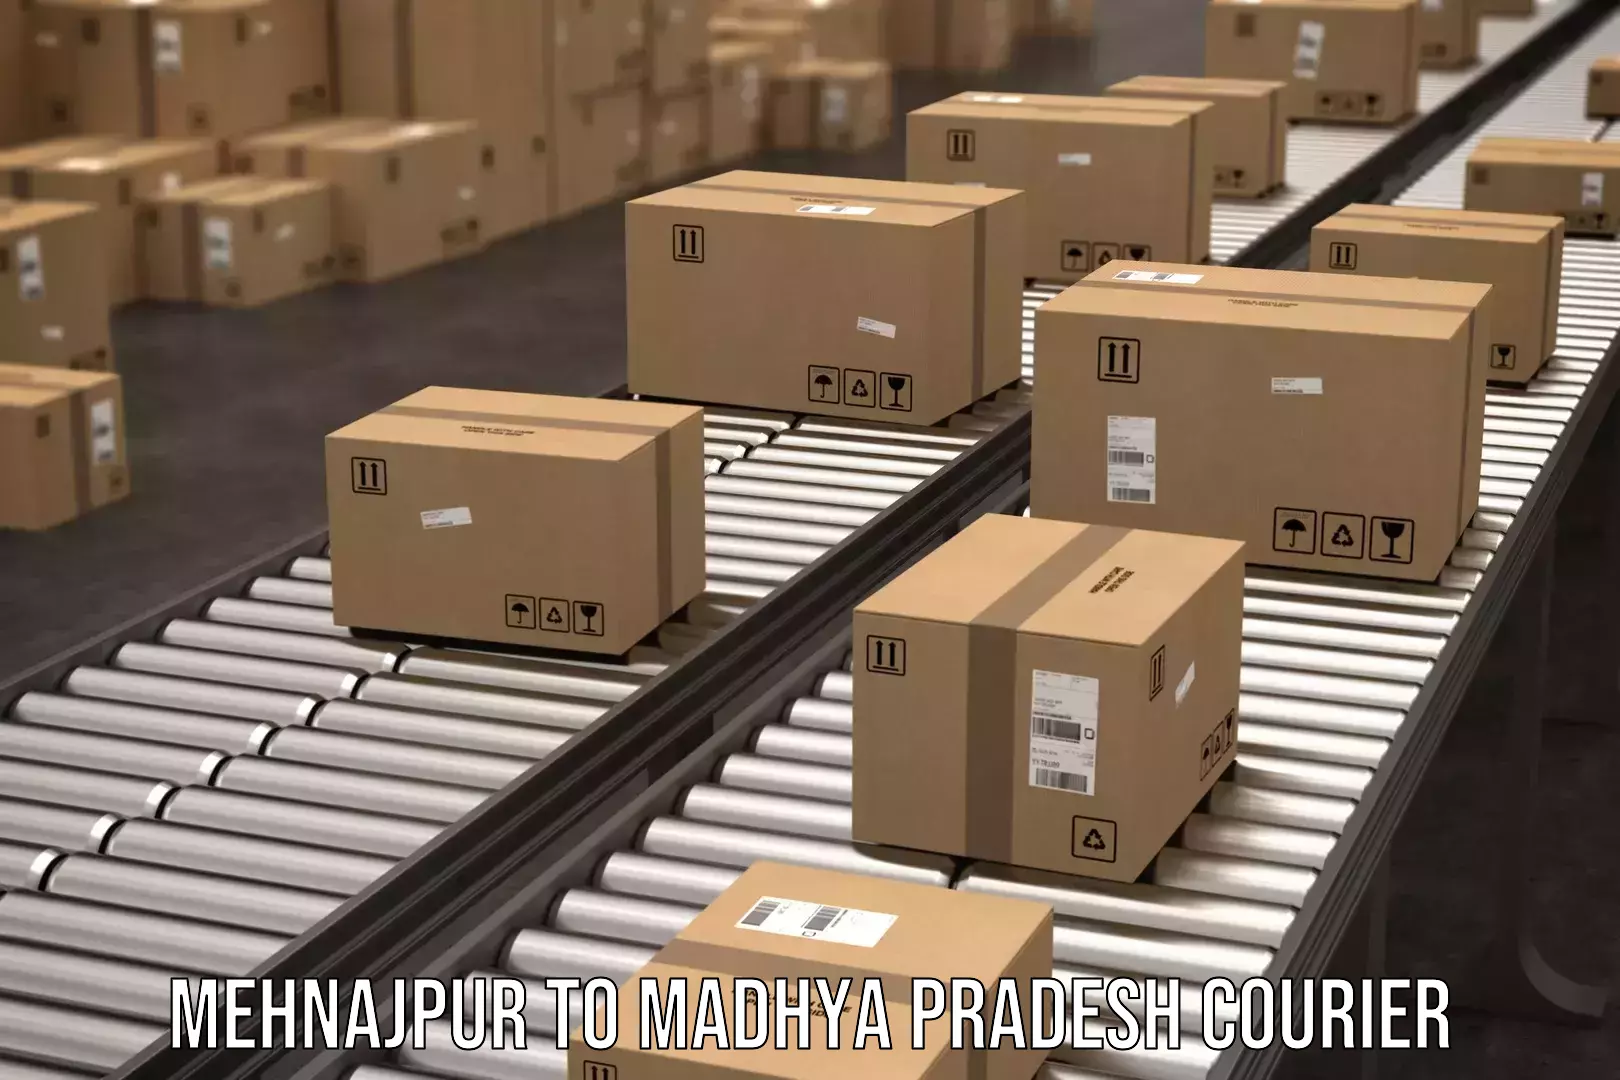 Cargo delivery service Mehnajpur to Madhya Pradesh